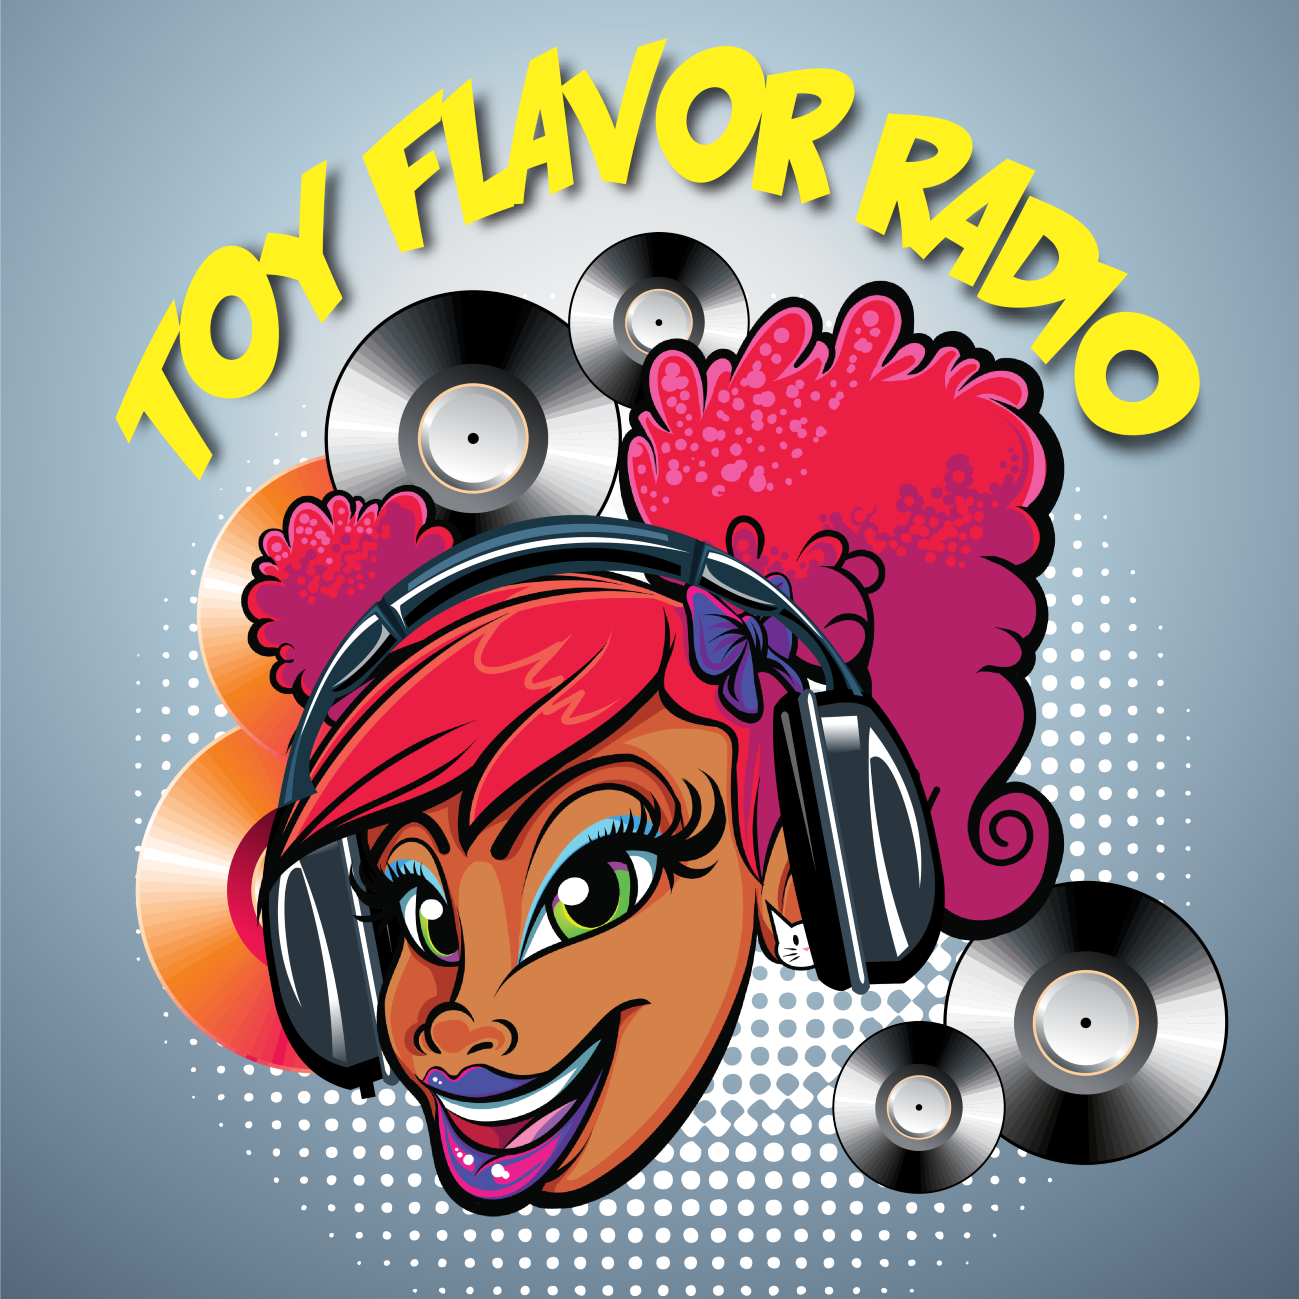 Toy Flavor Radio